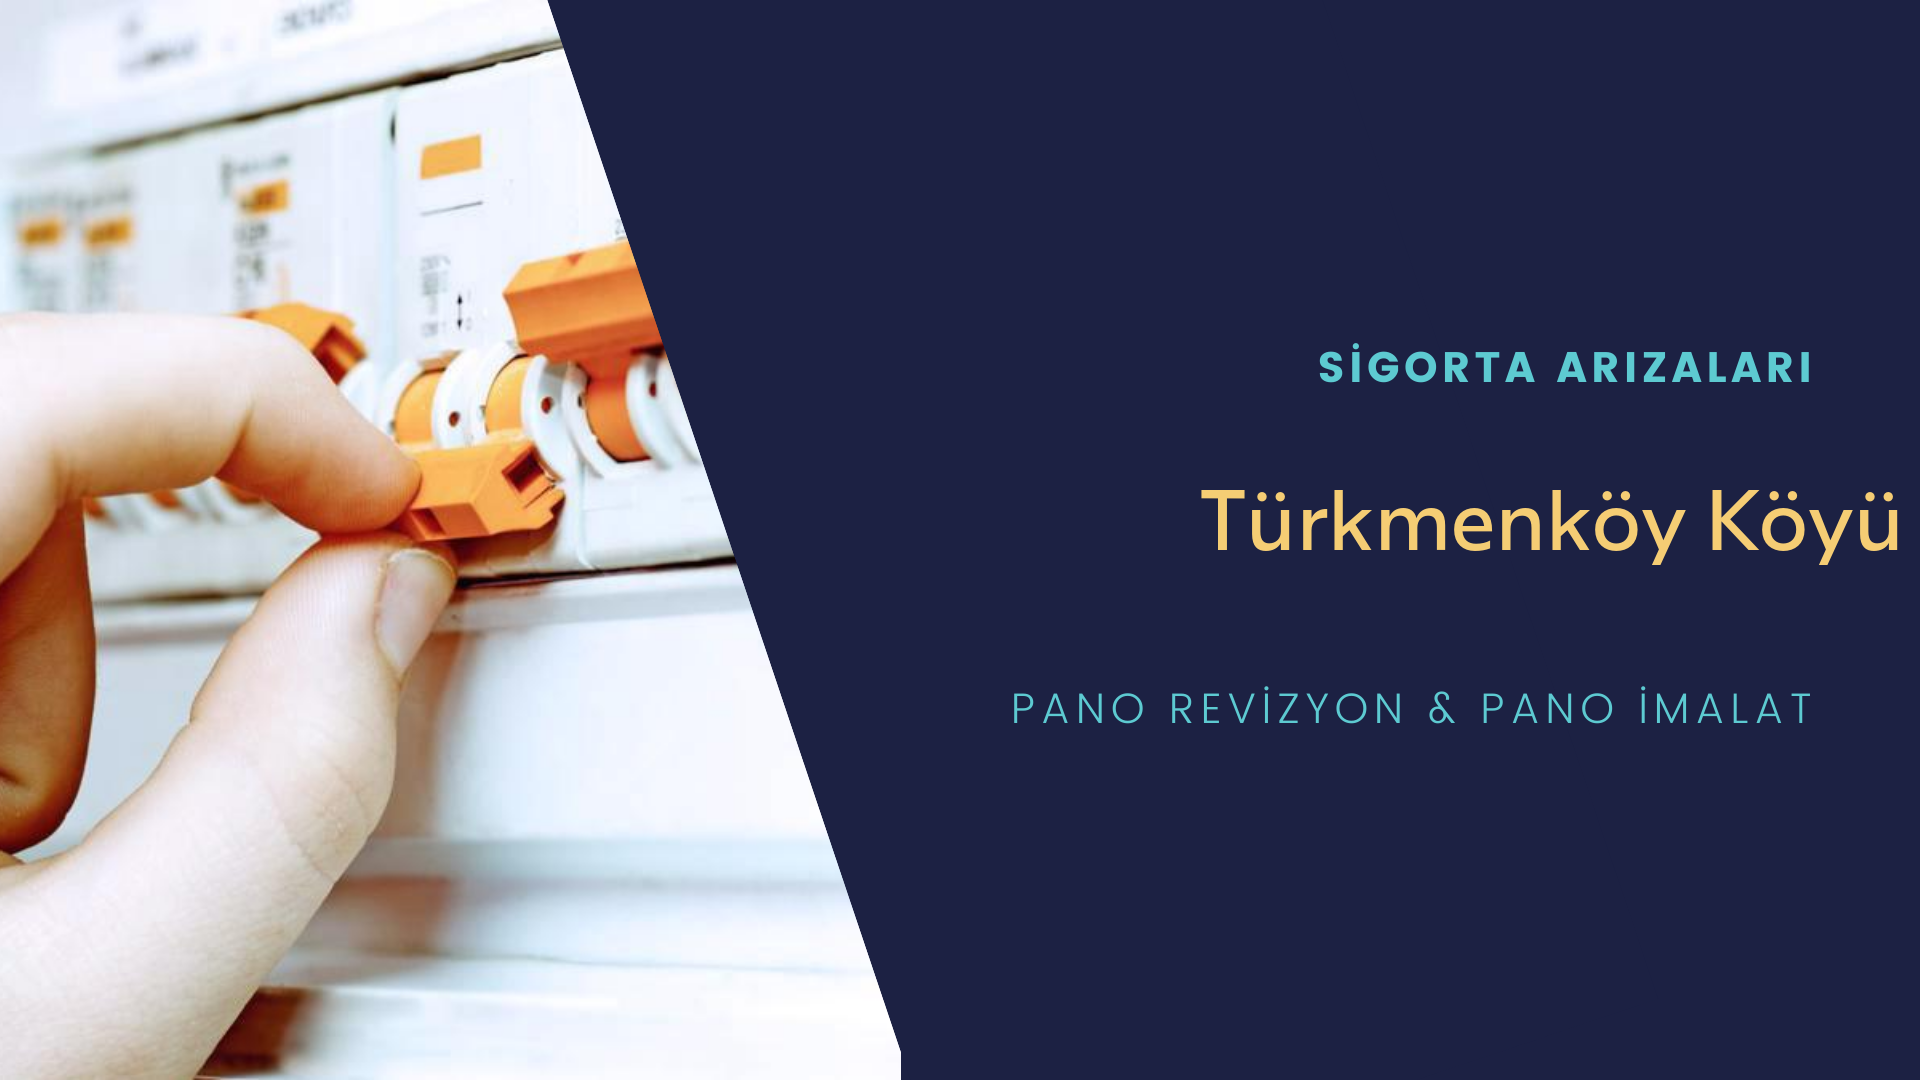 Türkmenköy Köyü Sigorta Arızaları İçin Profesyonel Elektrikçi ustalarımızı dilediğiniz zaman arayabilir talepte bulunabilirsiniz.